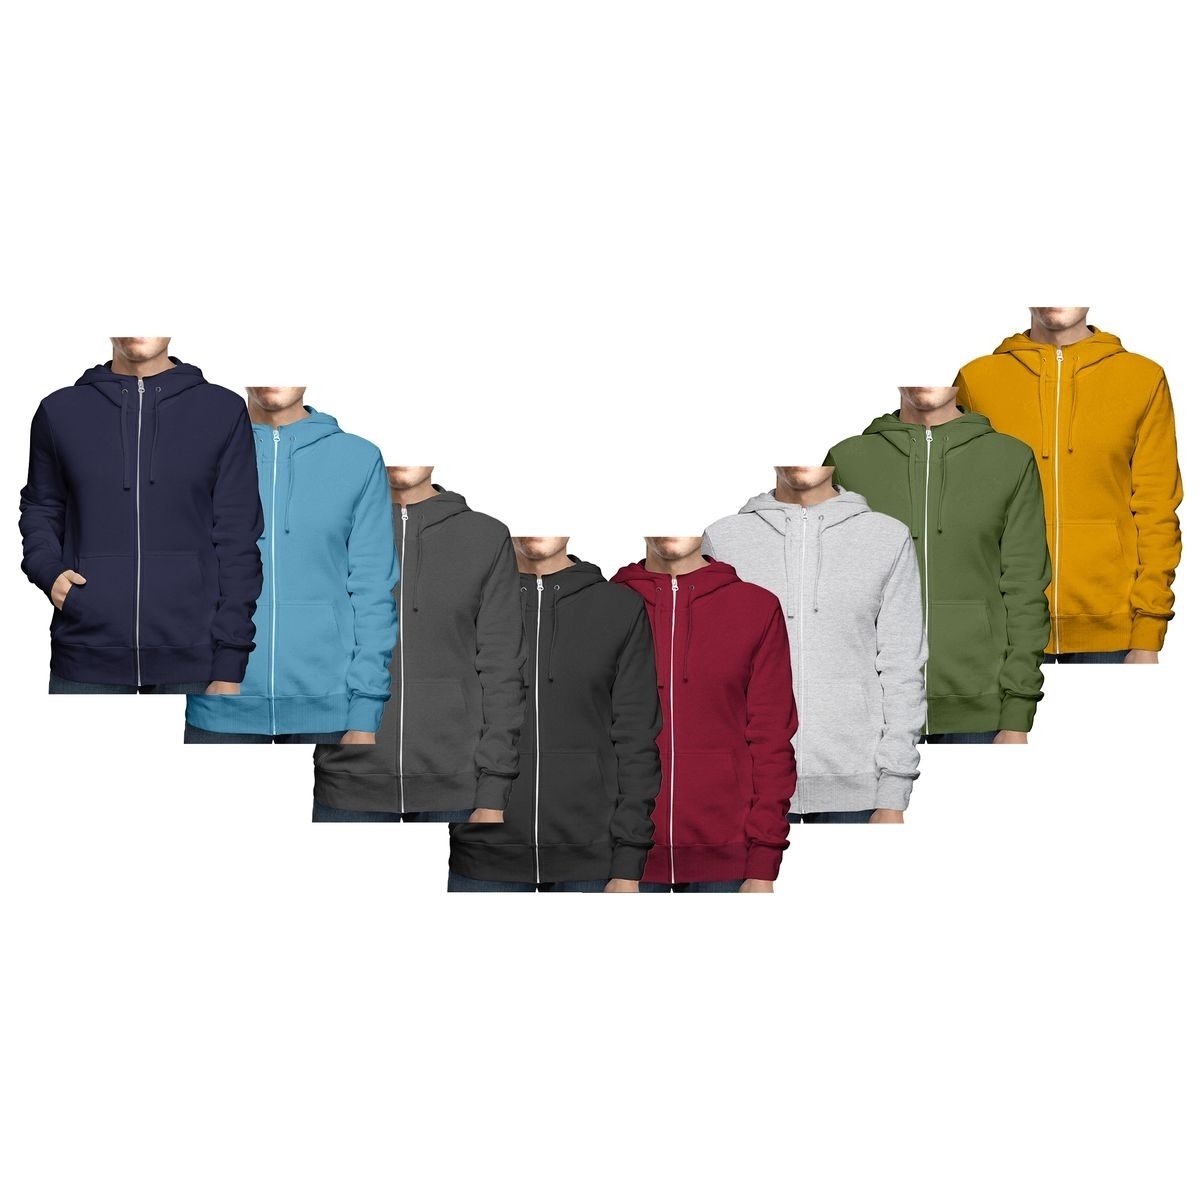 Men's Big & Tall Winter Warm Soft Cozy Full Zip-Up Fleece Lined Hoodie Sweatshirt - Red, Large